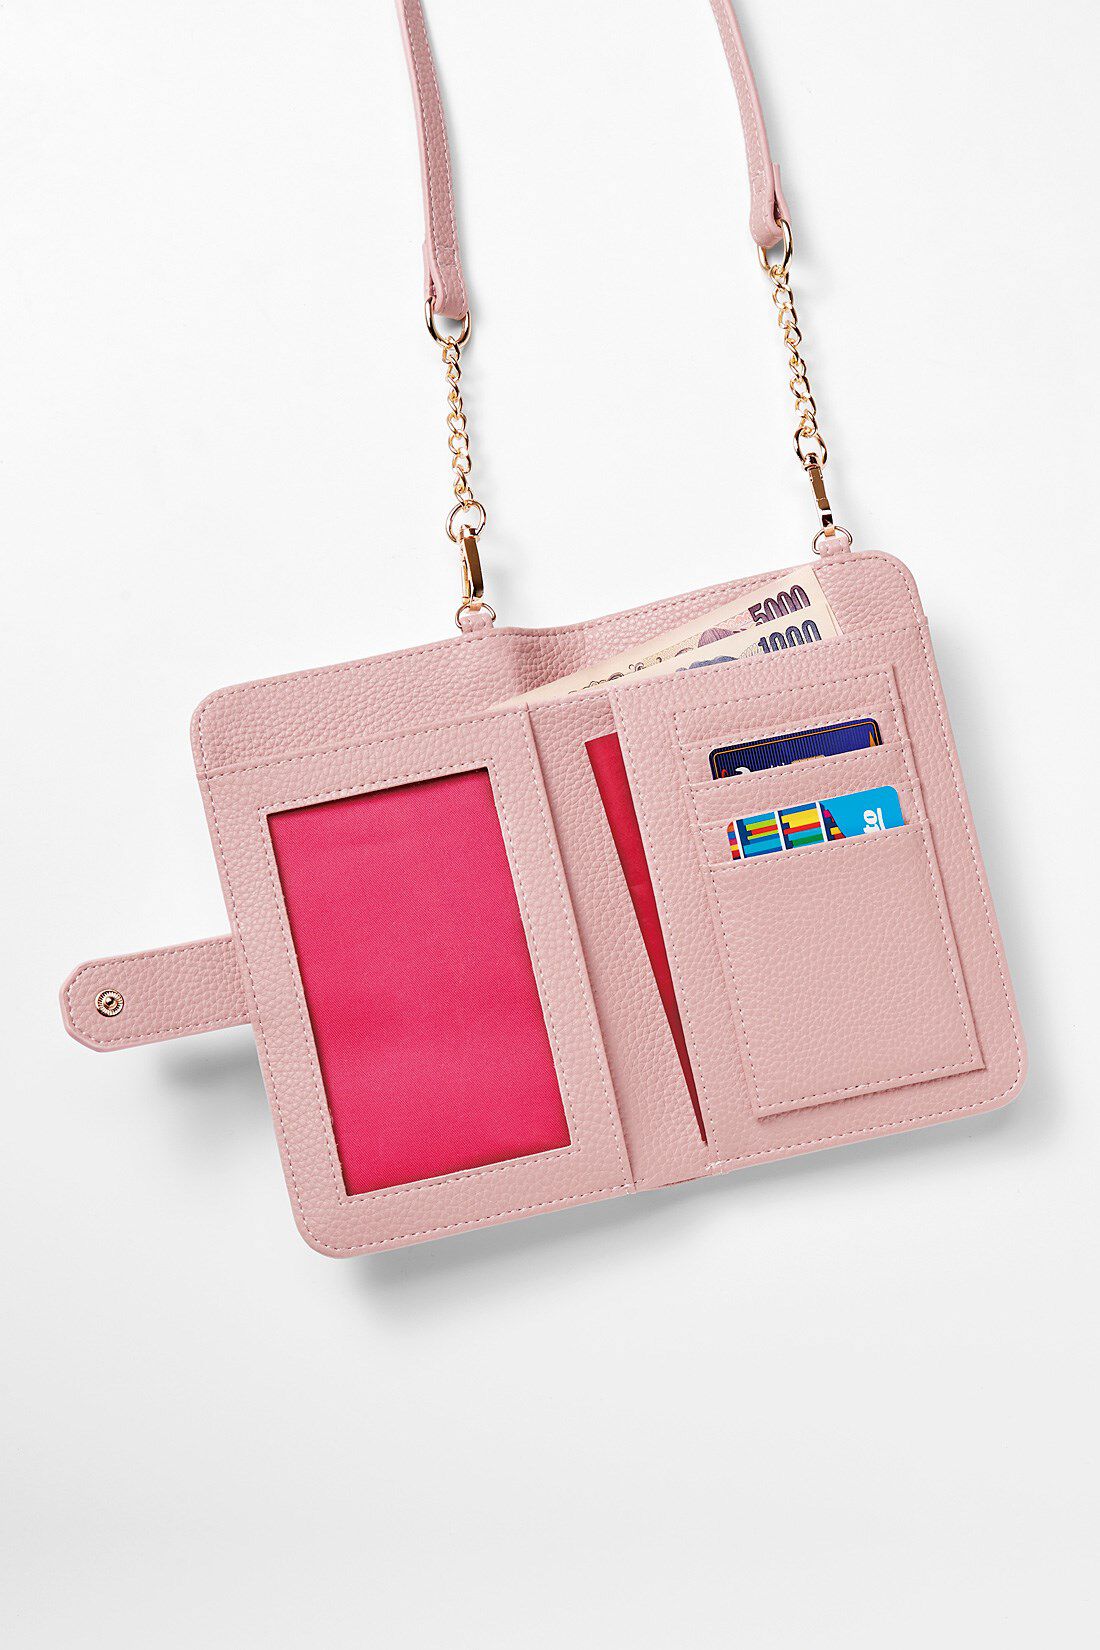 OSYAIRO|OSYAIRO フォトポケットが付いた スマホ＆おさいふポーチ〈ピンク〉|ひらくと左側はフォトポケット。推しの写真を入れてニヤニヤできます。笑　右側は通帳、パスポートなども入るサイズのポケット、4枚分のカードポケット。